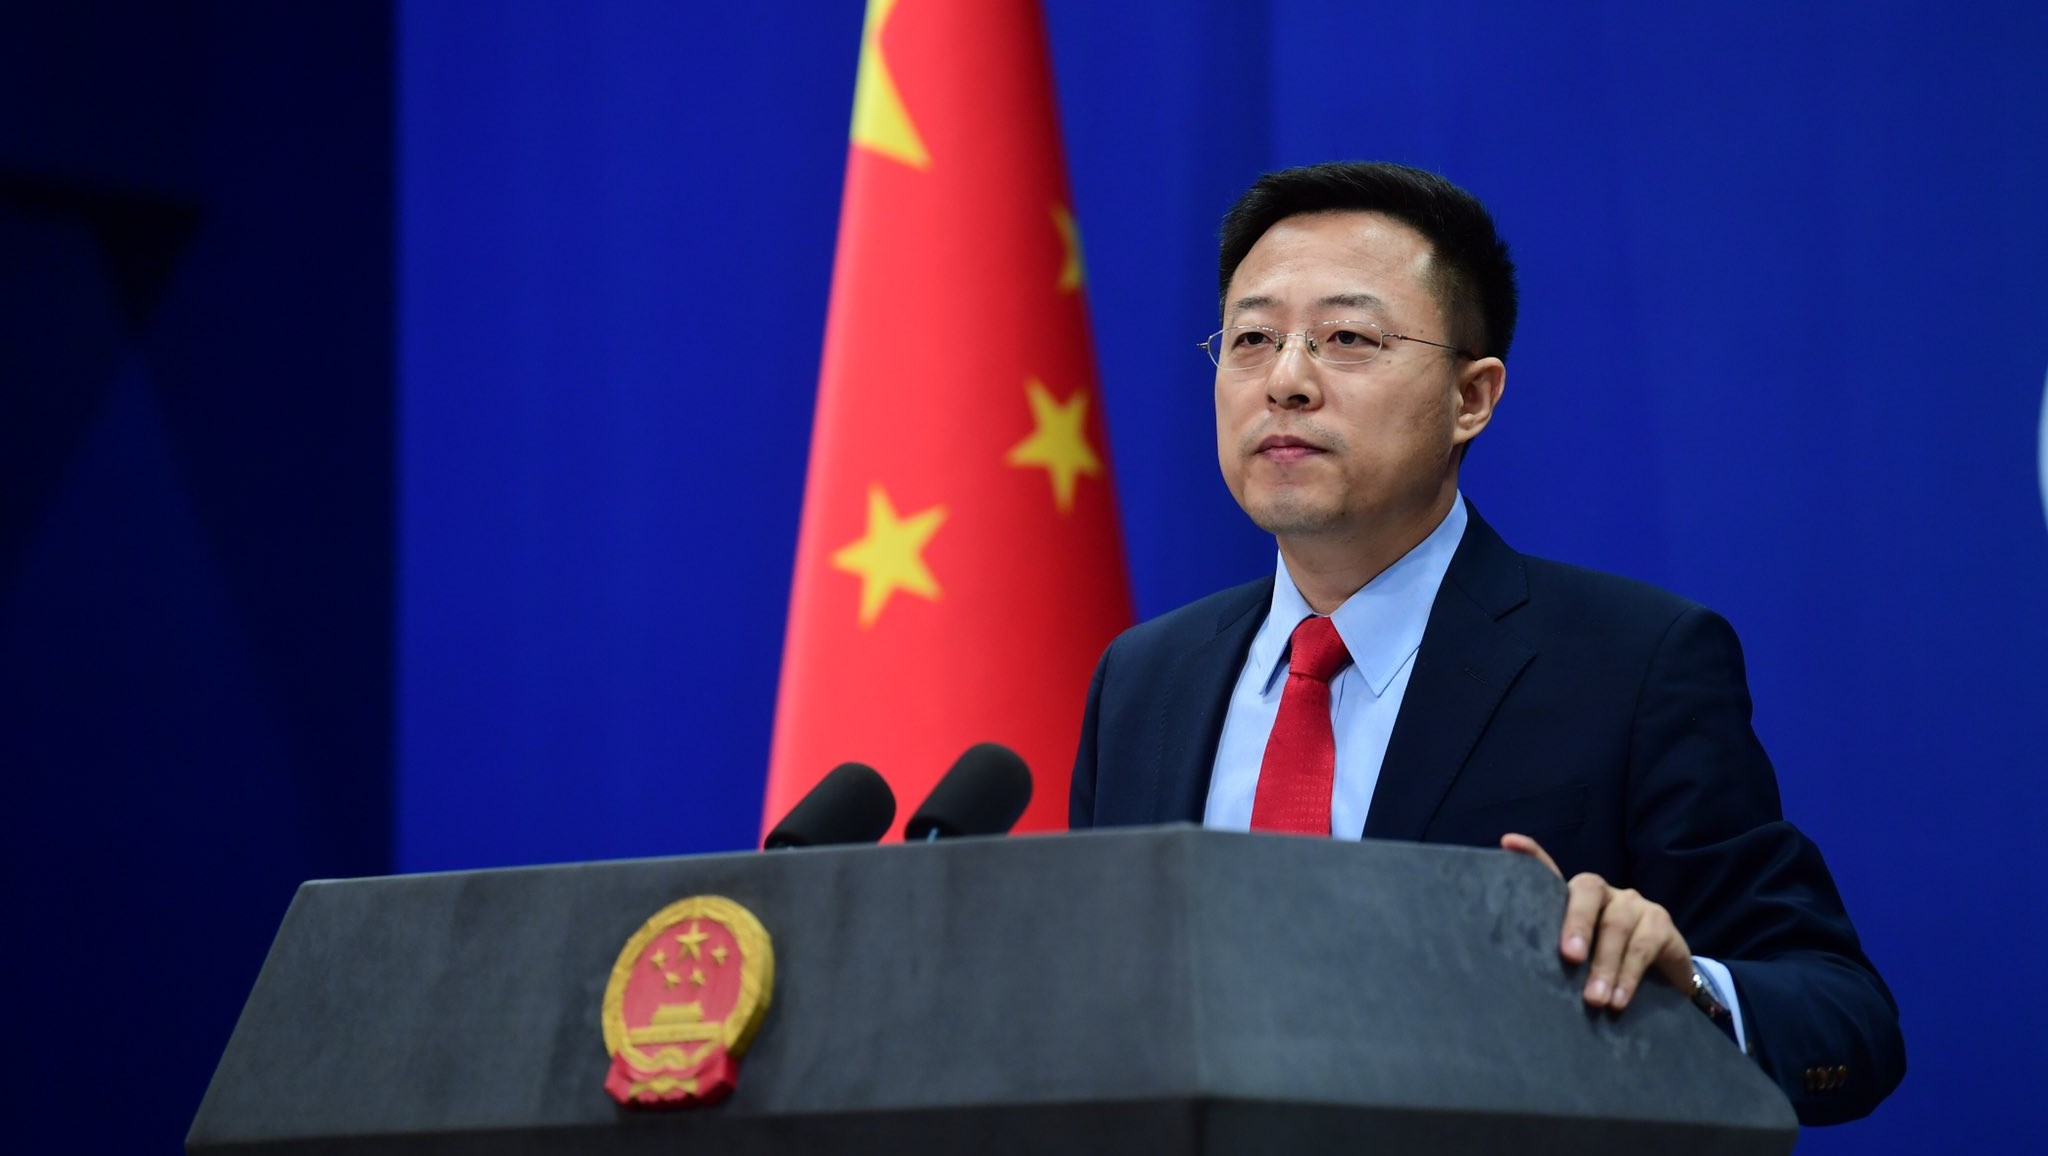 Zhao Lijian declaró que su gobierno ha asistido, dentro de lo posible, al personal diplomático y consular residente en China